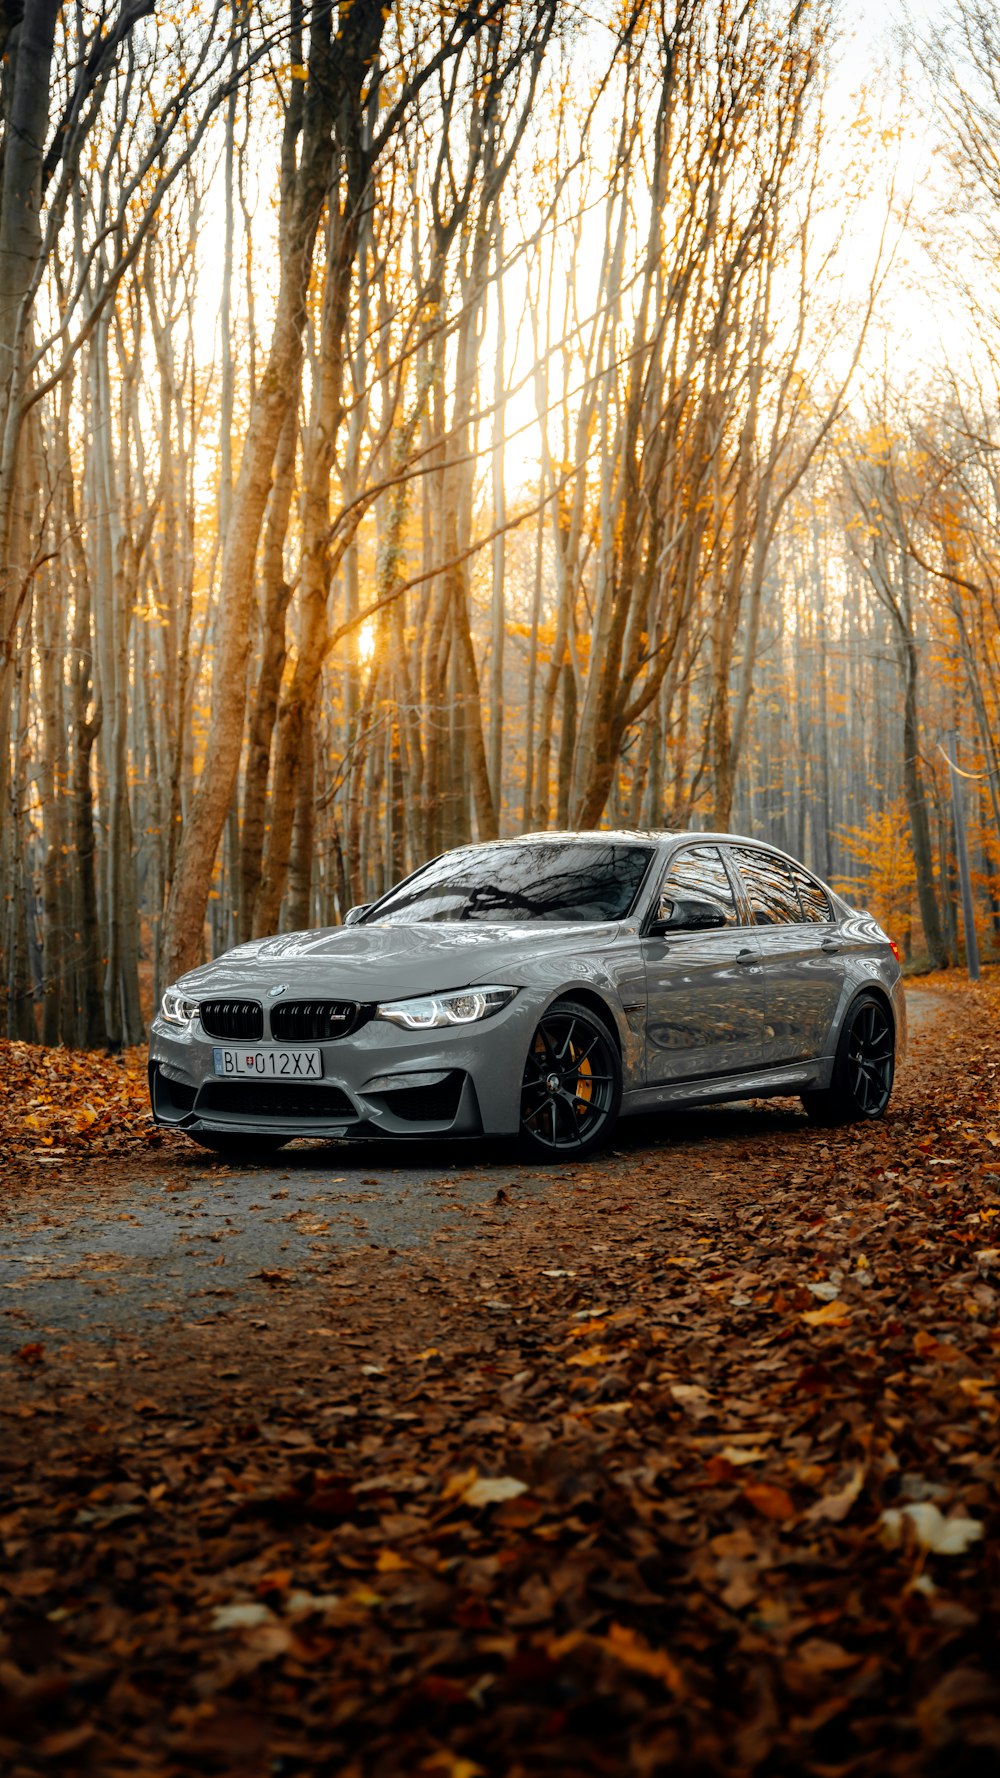 BMW luôn là thương hiệu được yêu thích vì độ bền, hiệu suất vượt trội và tính thẩm mỹ cao. Hình nền BMW sẽ mang đến cho màn hình của bạn một phong cách cực kỳ sang trọng và đẳng cấp. Khám phá những mẫu hình nền BMW đẹp mắt và quyến rũ để cảm nhận sức cuốn hút của thương hiệu này.